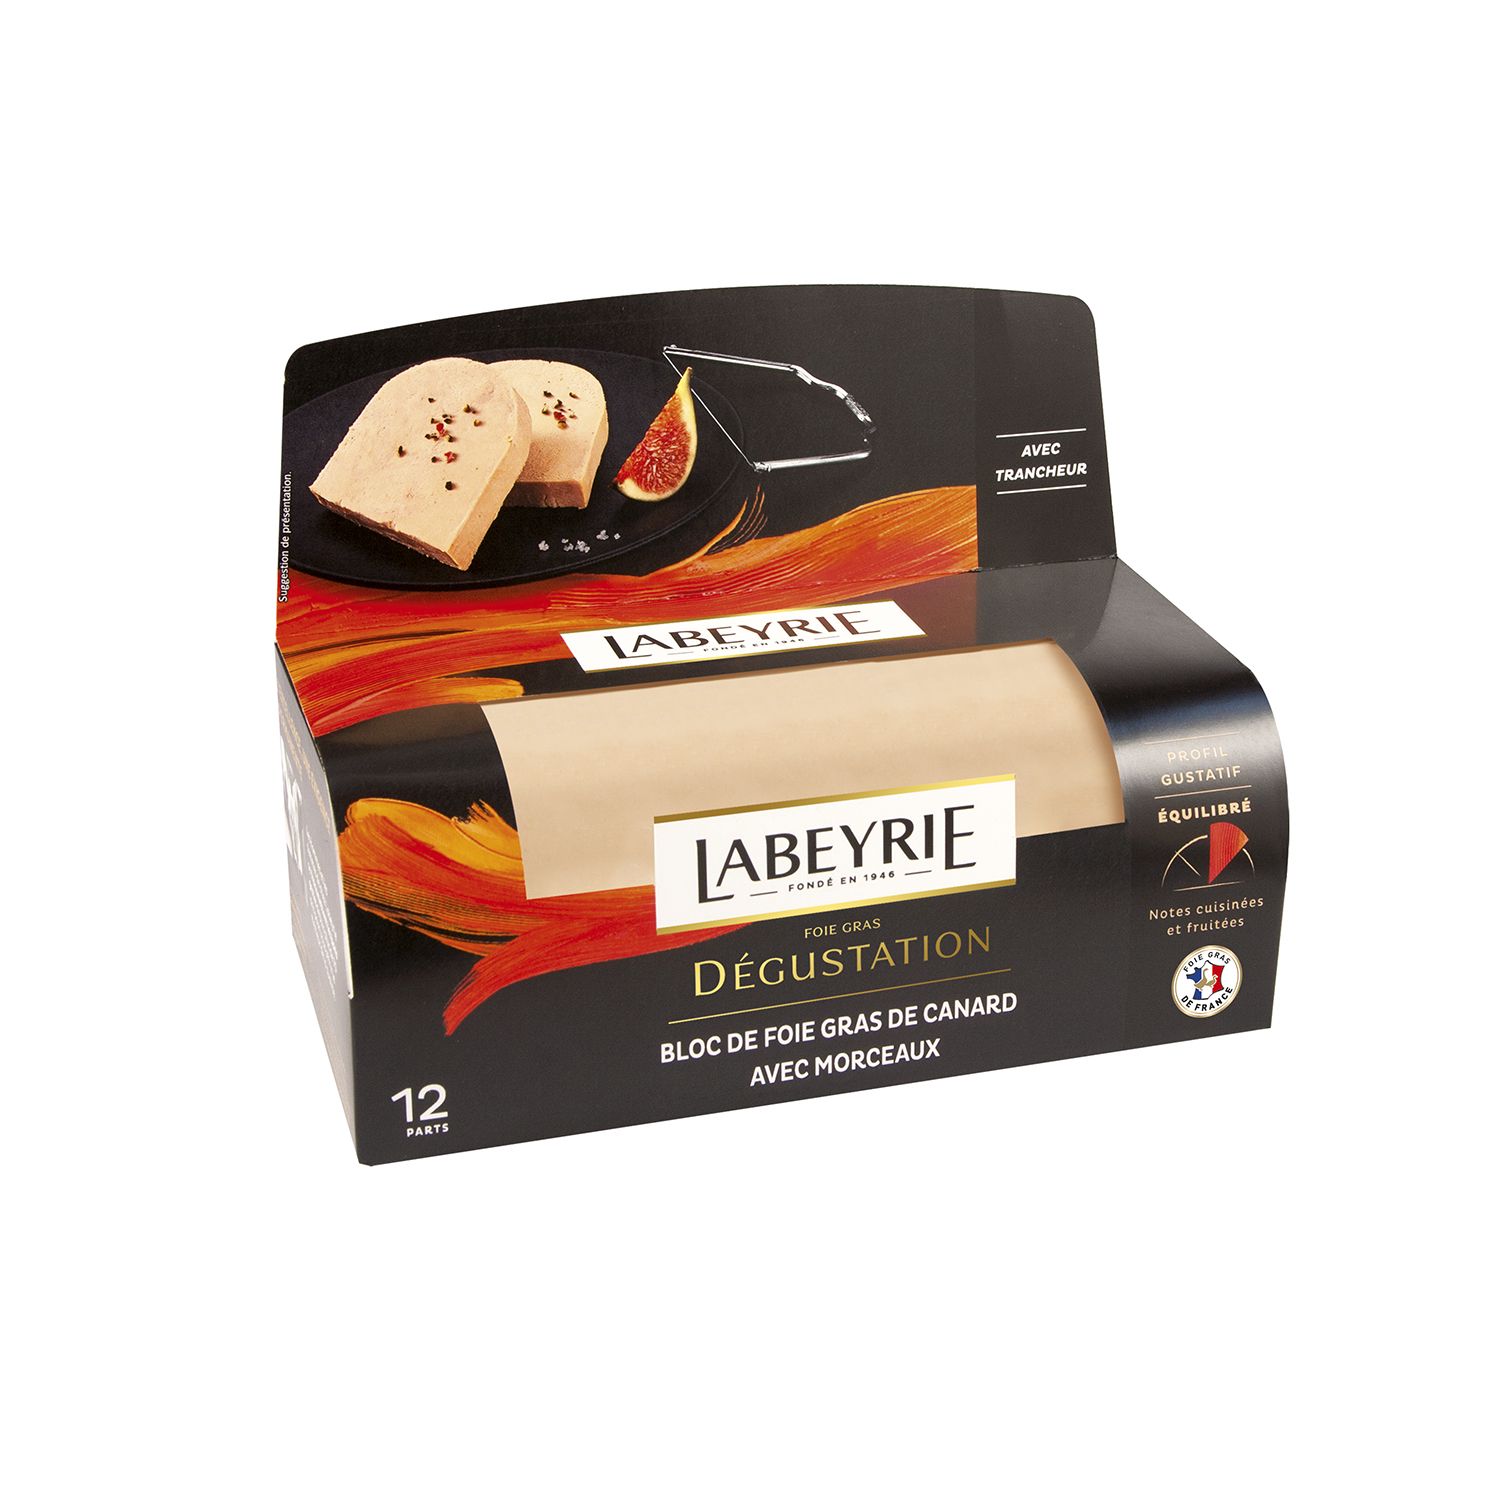 LABEYRIE Bloc de foie gras de canard avec morceaux IGP avec lyre 12 parts  460g pas cher 